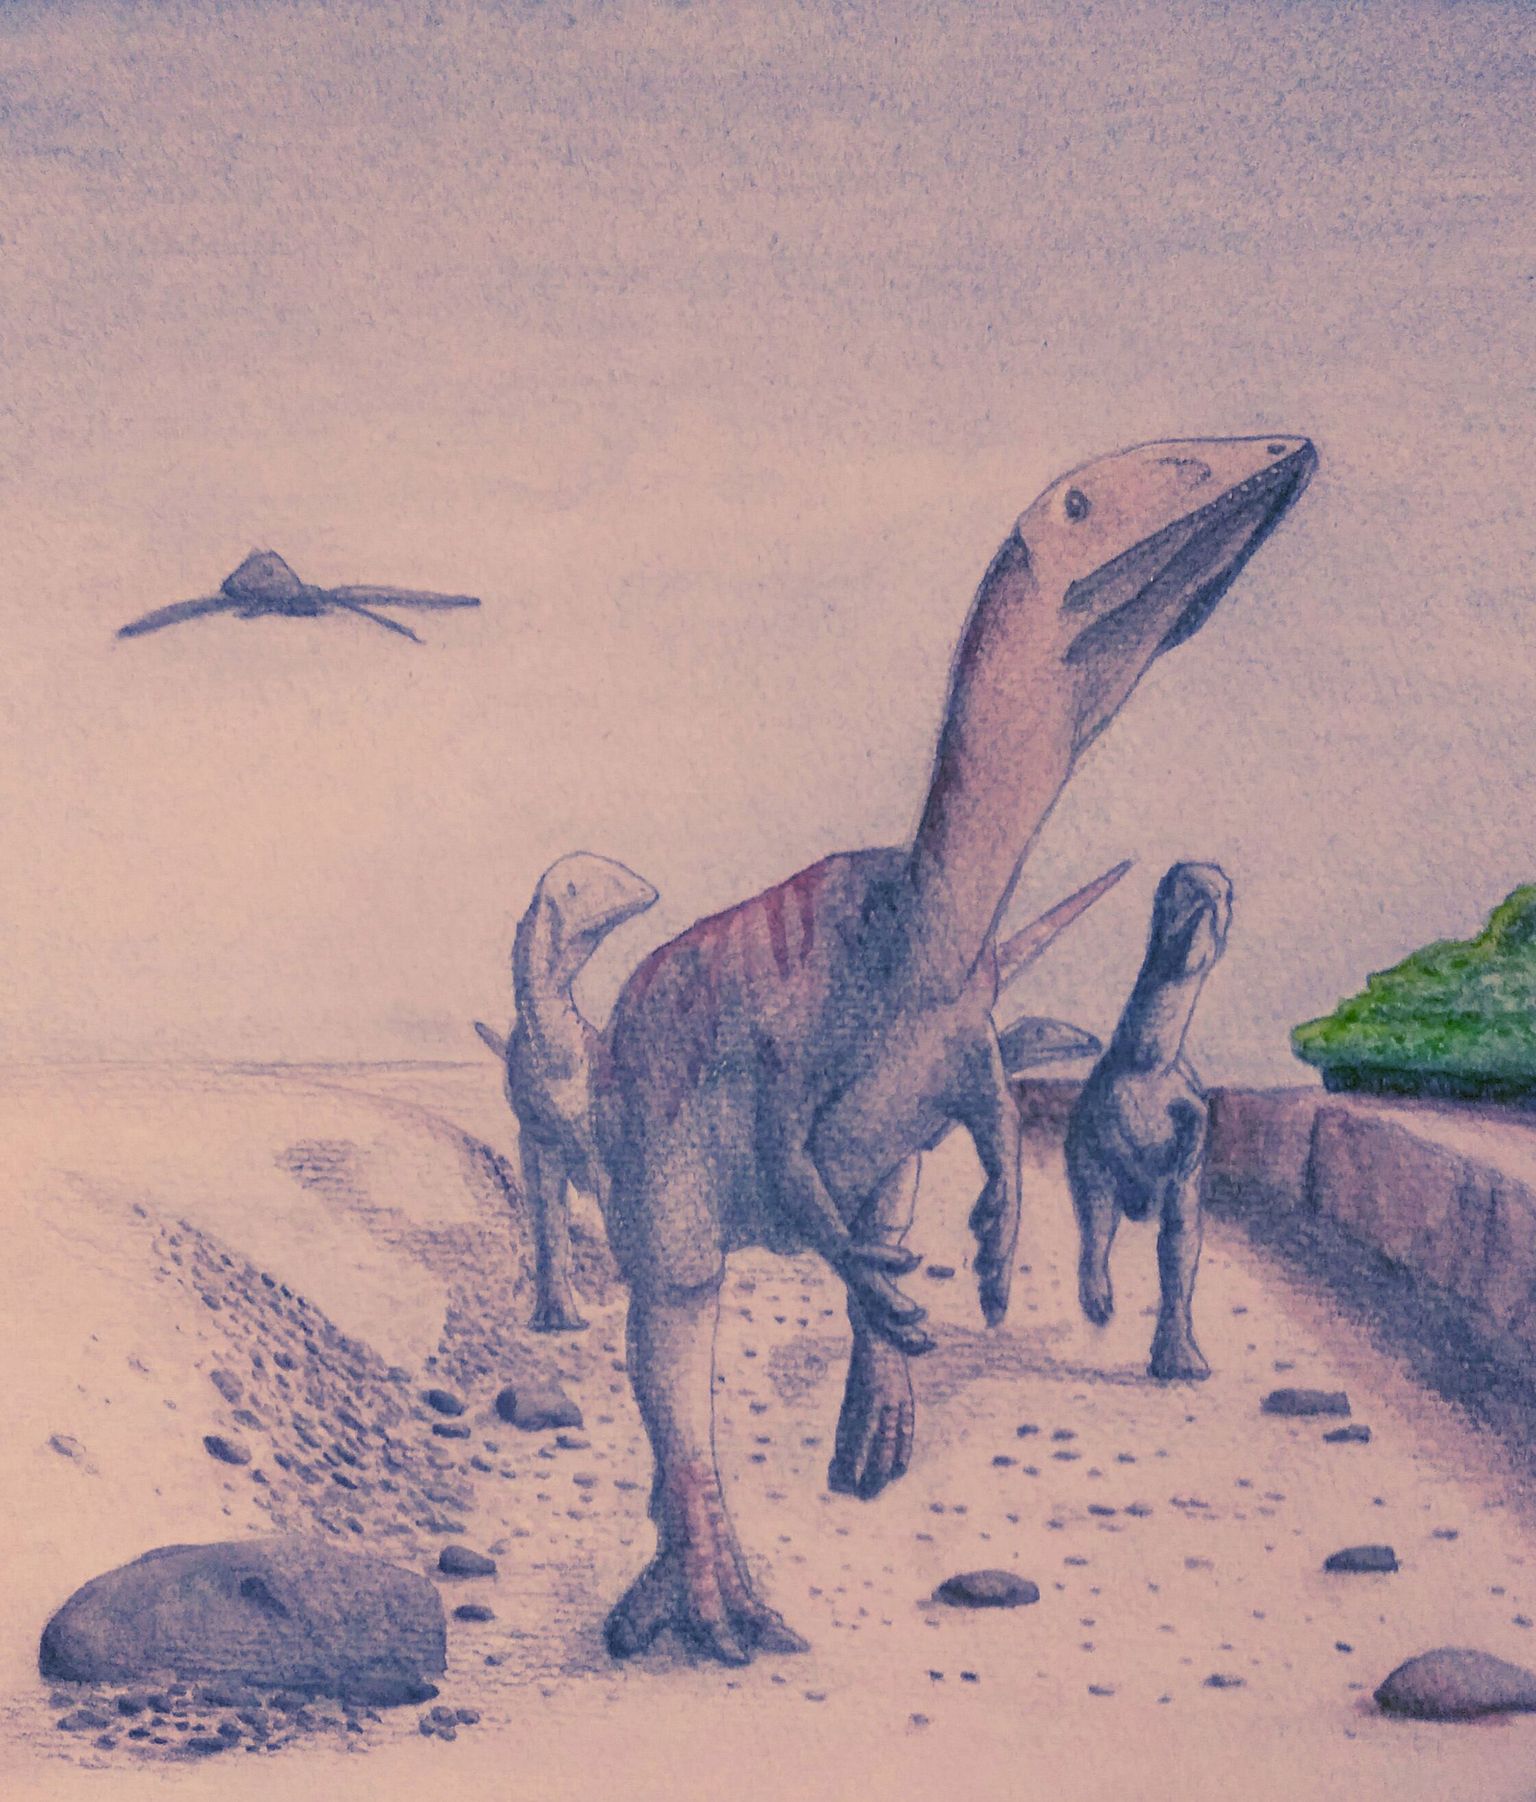 Dracoraptor hanigani elas Euroopas 200 miljonit aastat tagasi